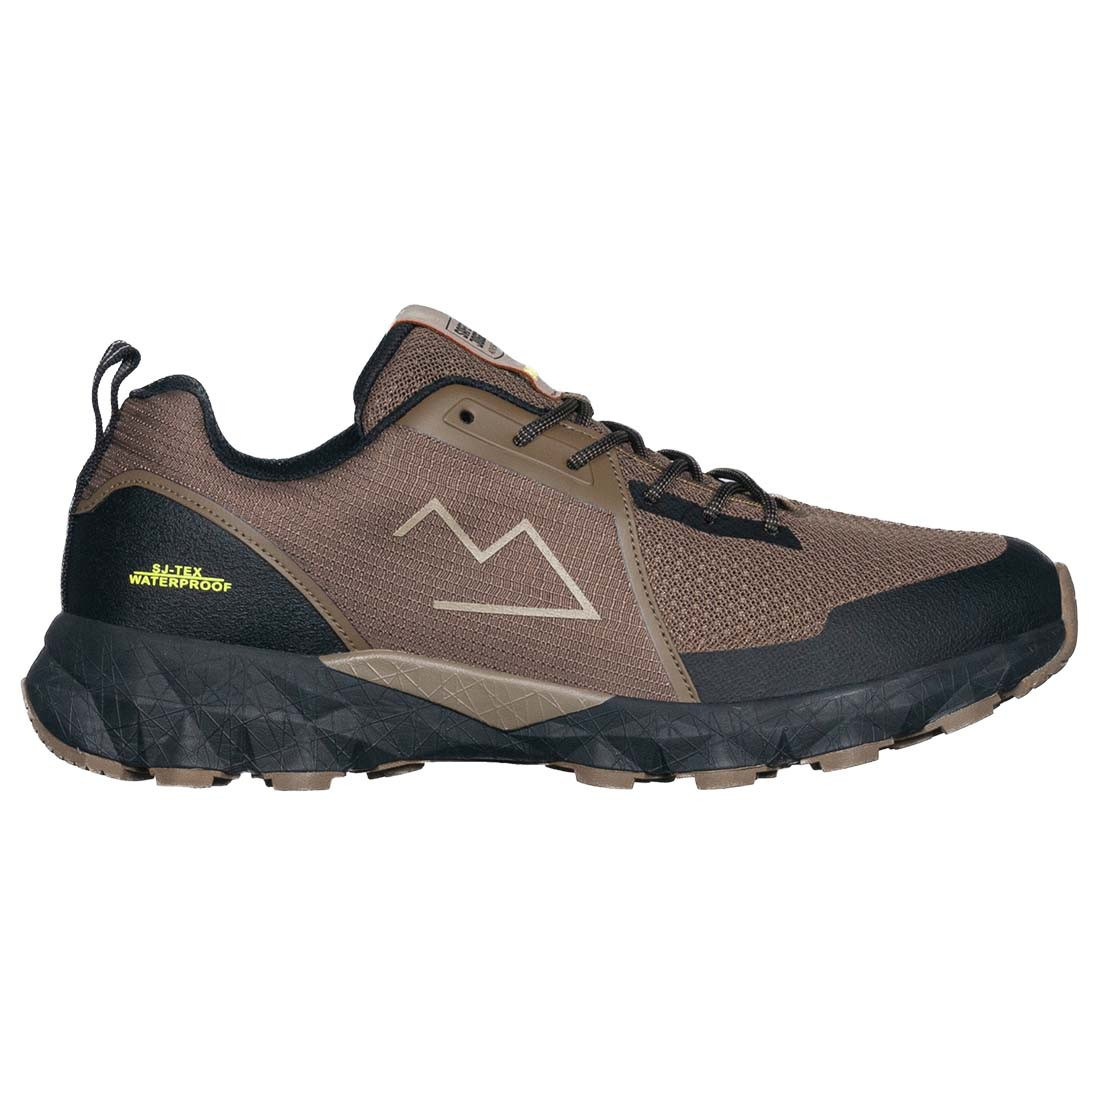 TAMAN zapatillas outdoor versátiles e impermeables - Calzado de protección